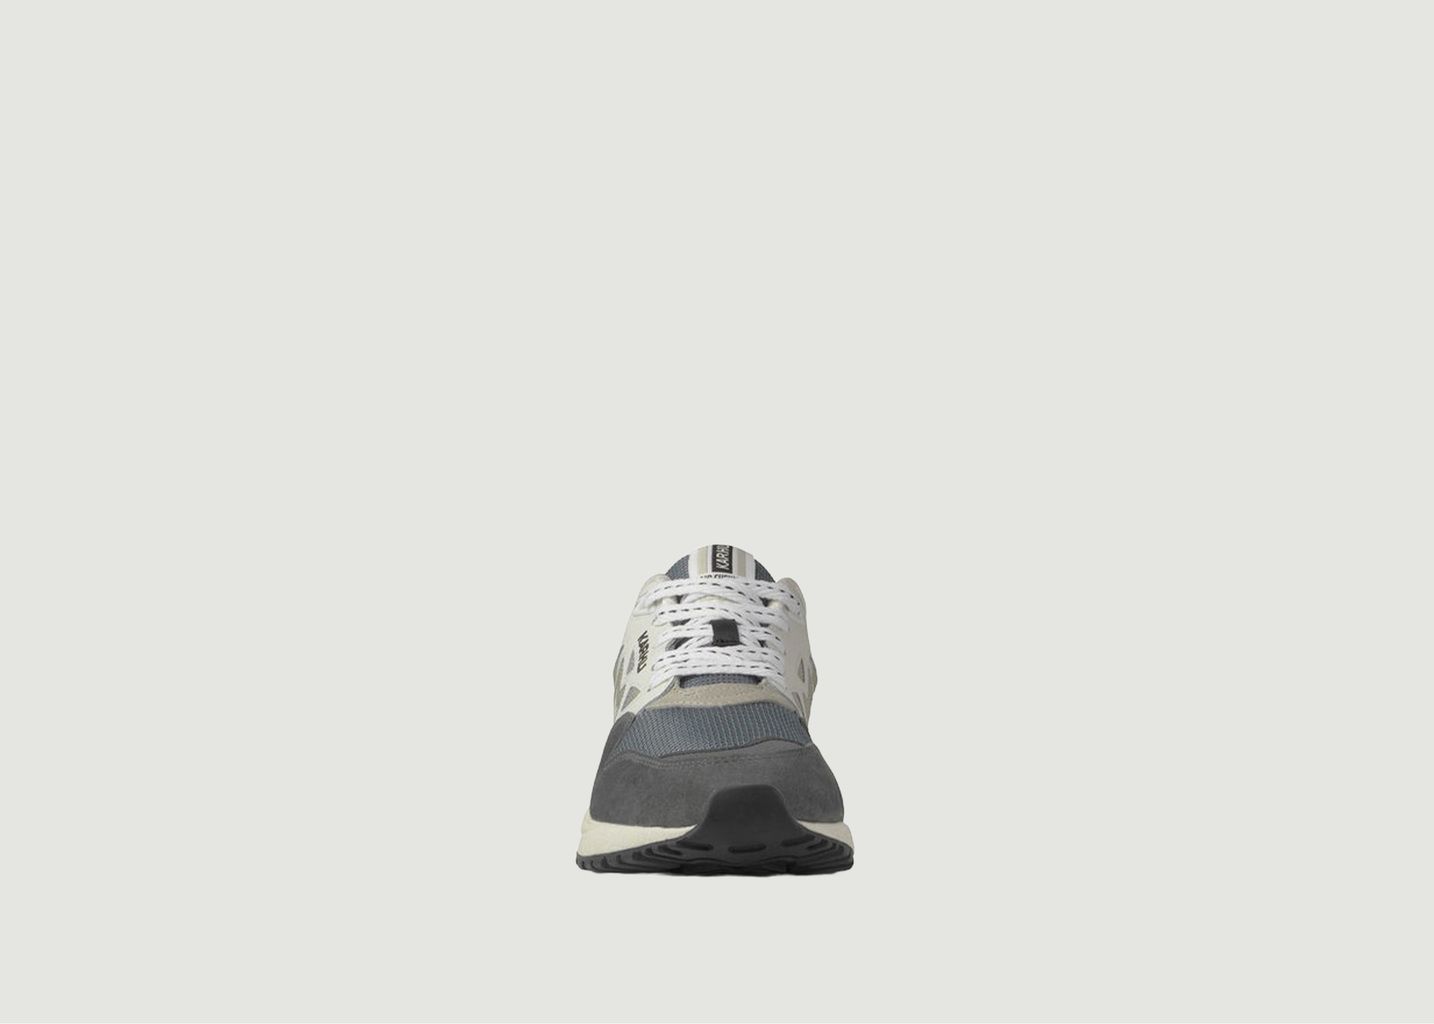 Legacy Sneakers - Karhu